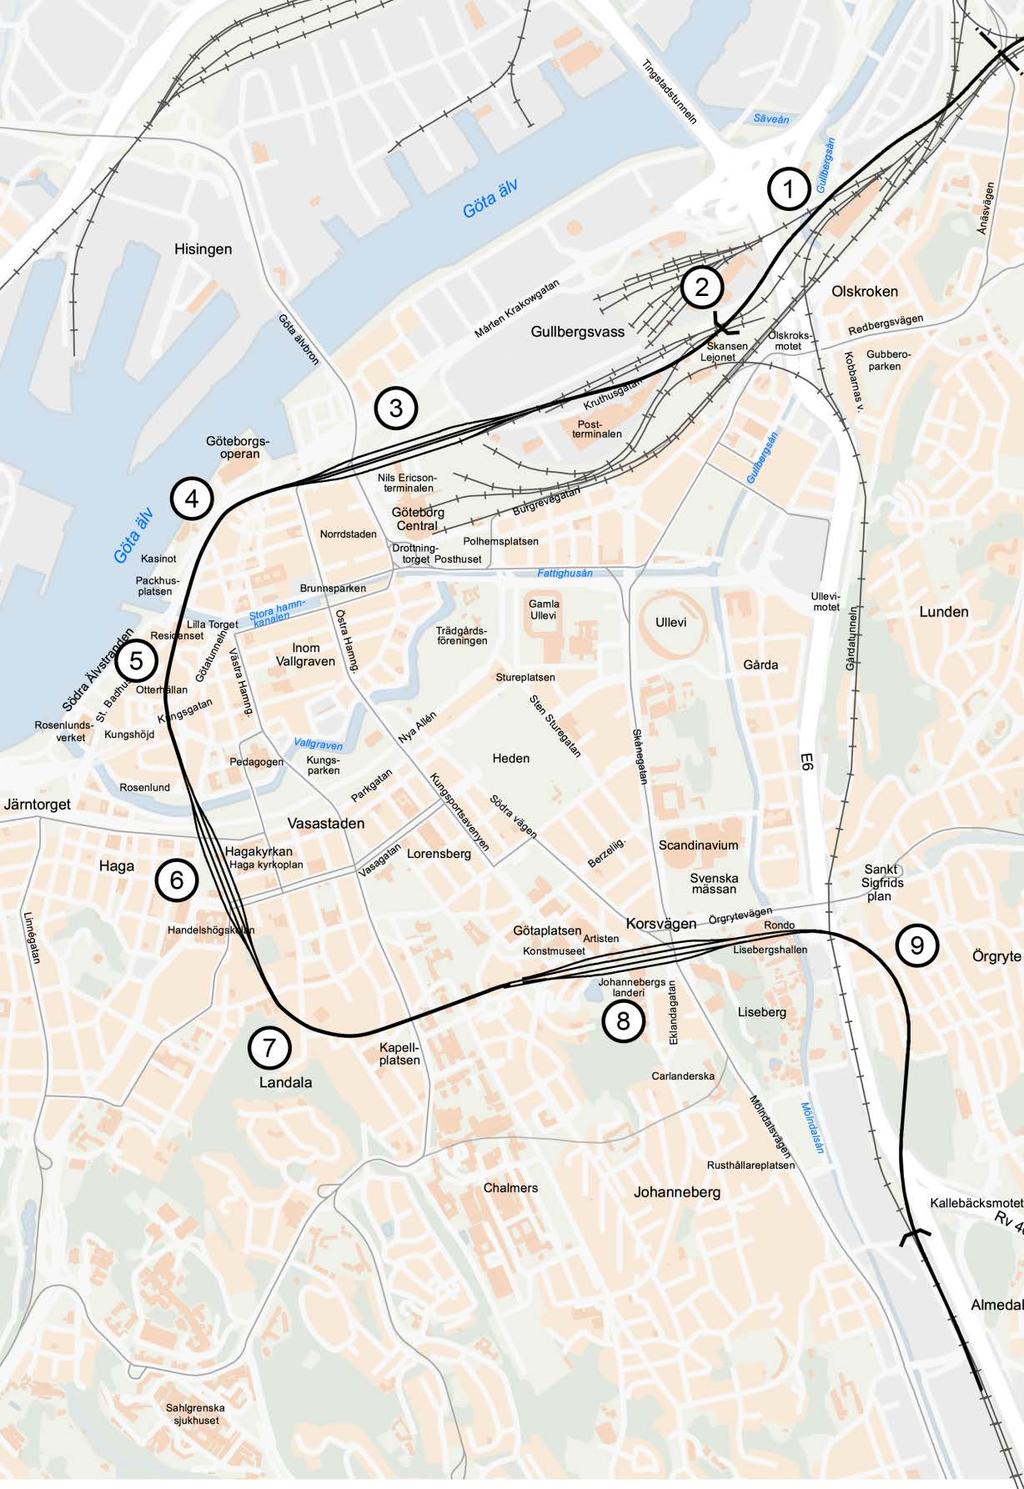 Västlänkens sträckning Planförslaget redovisar en sträckning av järnvägen som stämmer överrens med Trafikverkets järnvägsplan 2014.